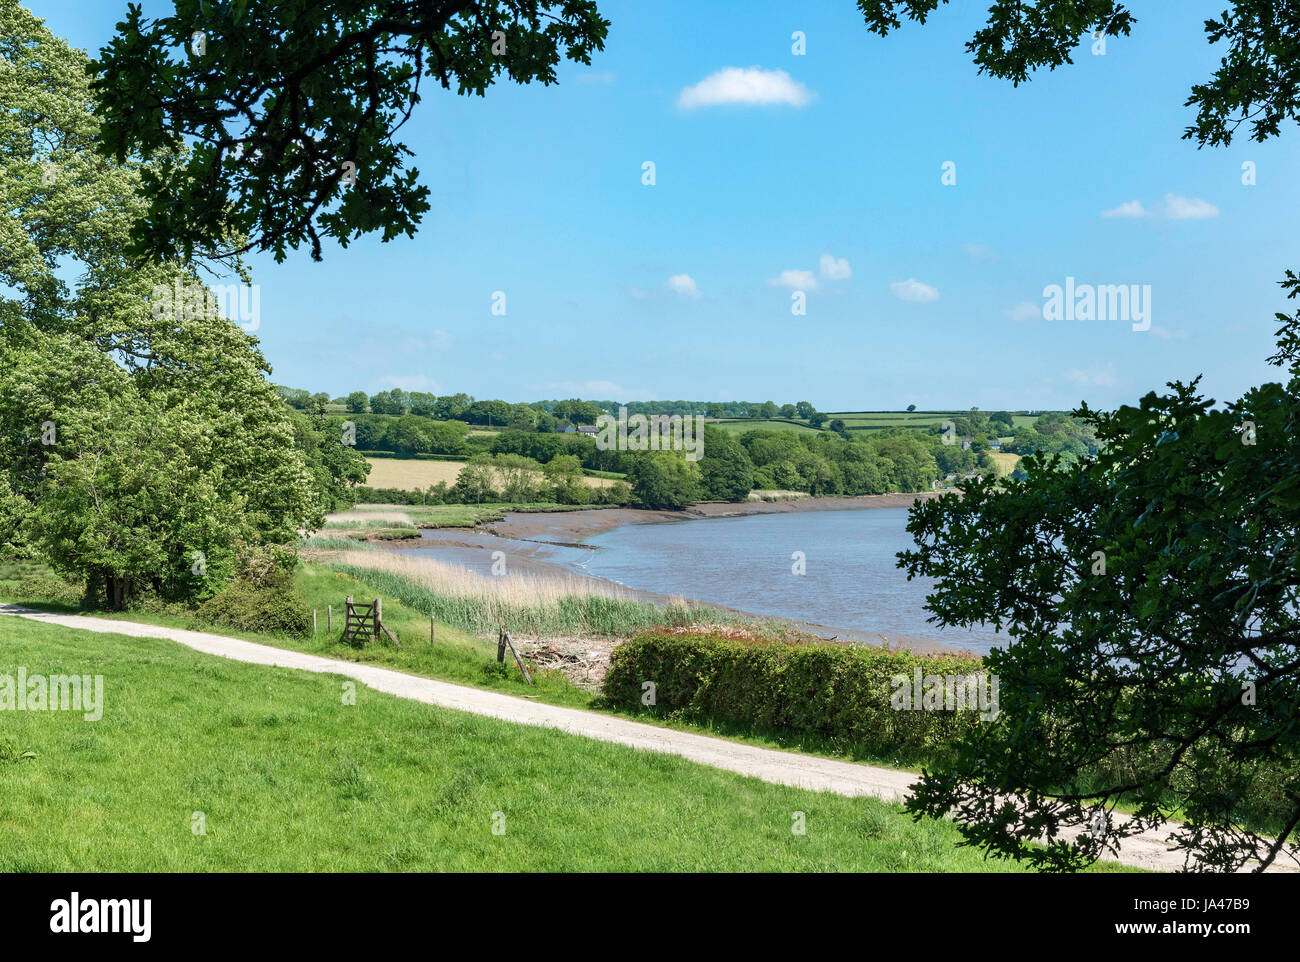 die Landschaft und den Fluss Tamar in der Nähe von st.mellion in Cornwall, England, Großbritannien, uk. Stockfoto